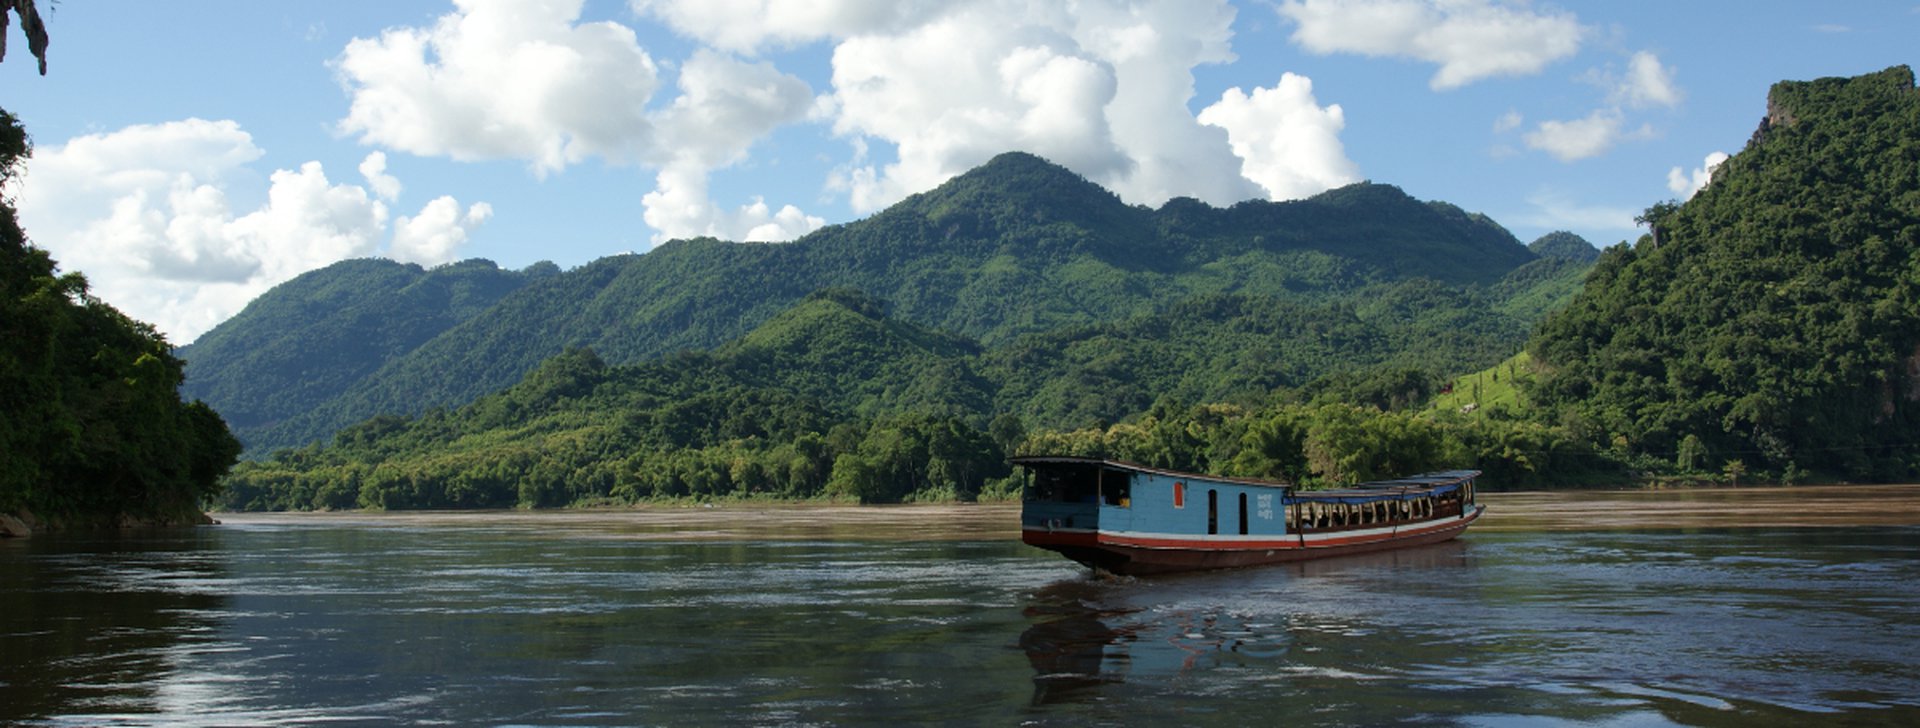 Reiseziele Laos